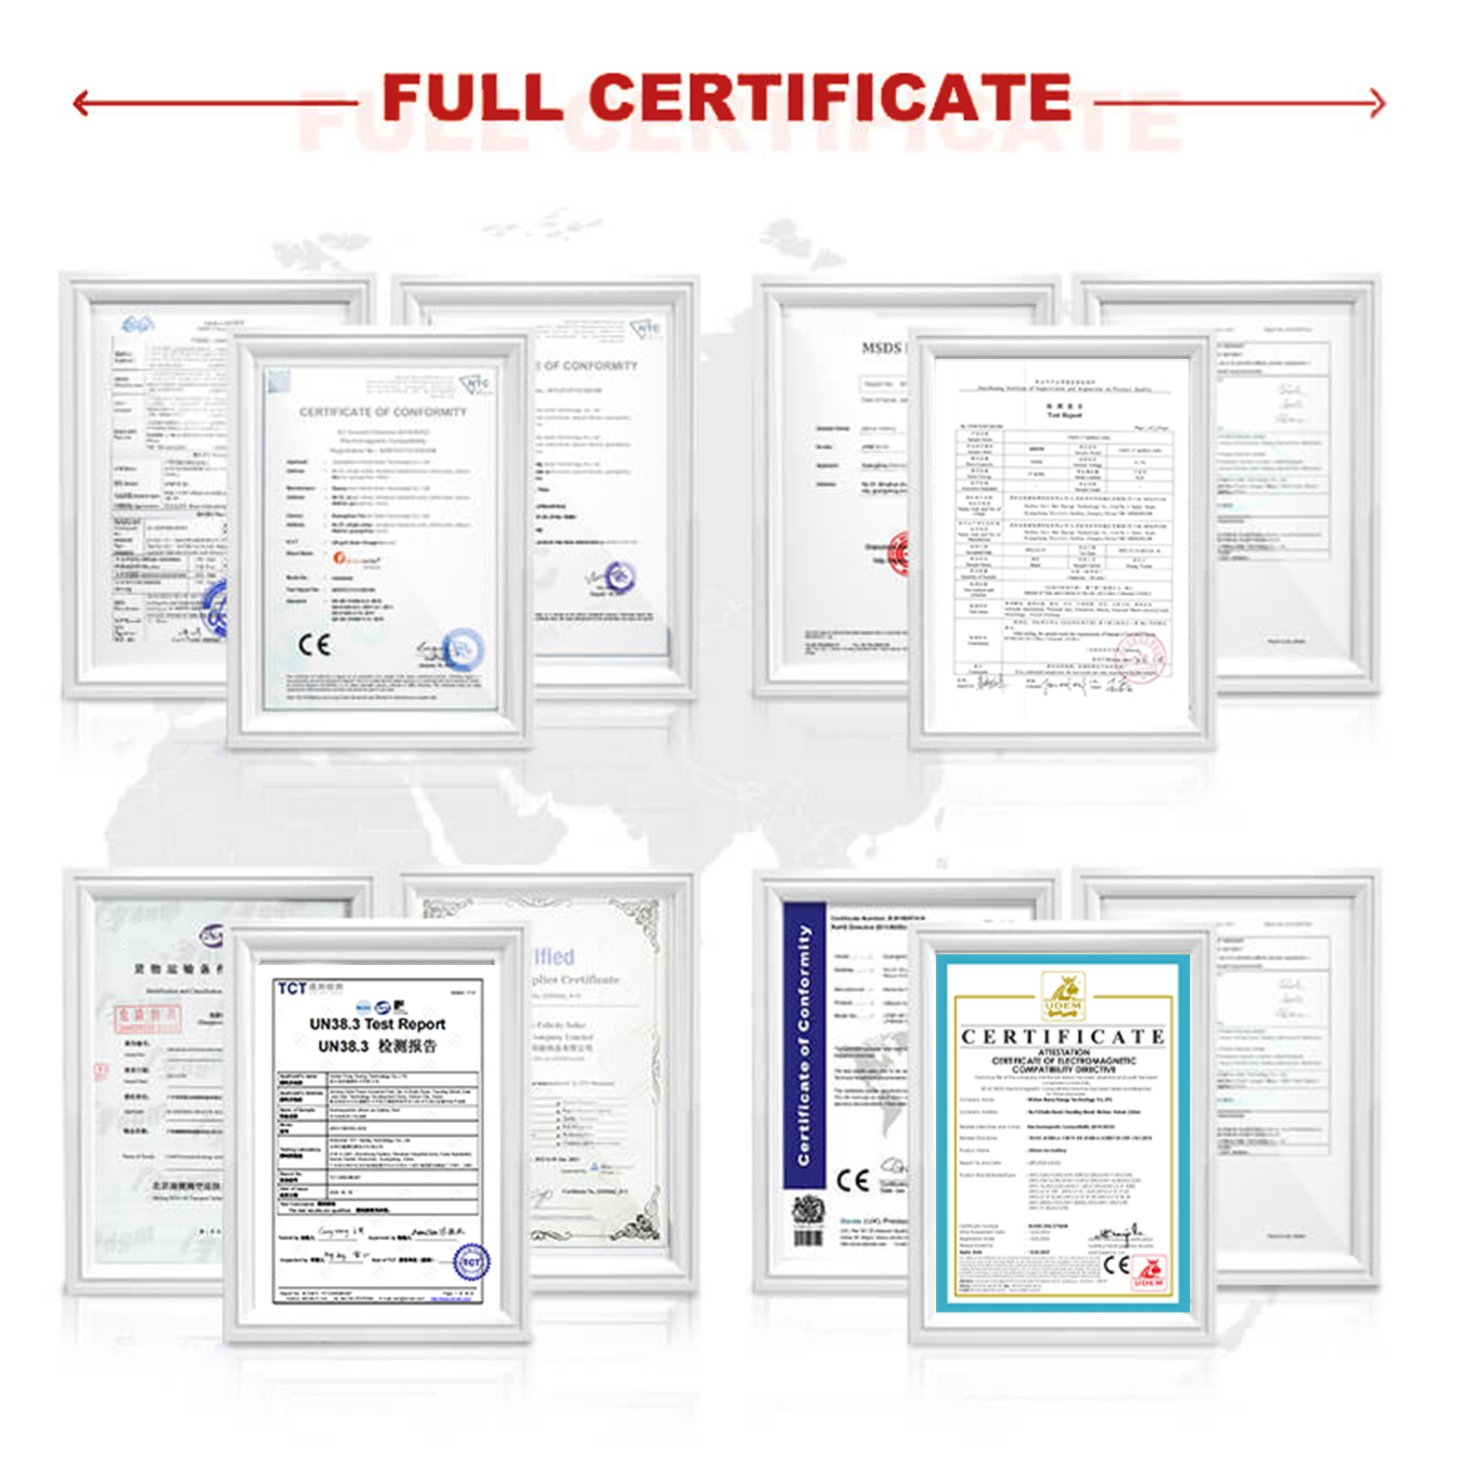 7 Certificate